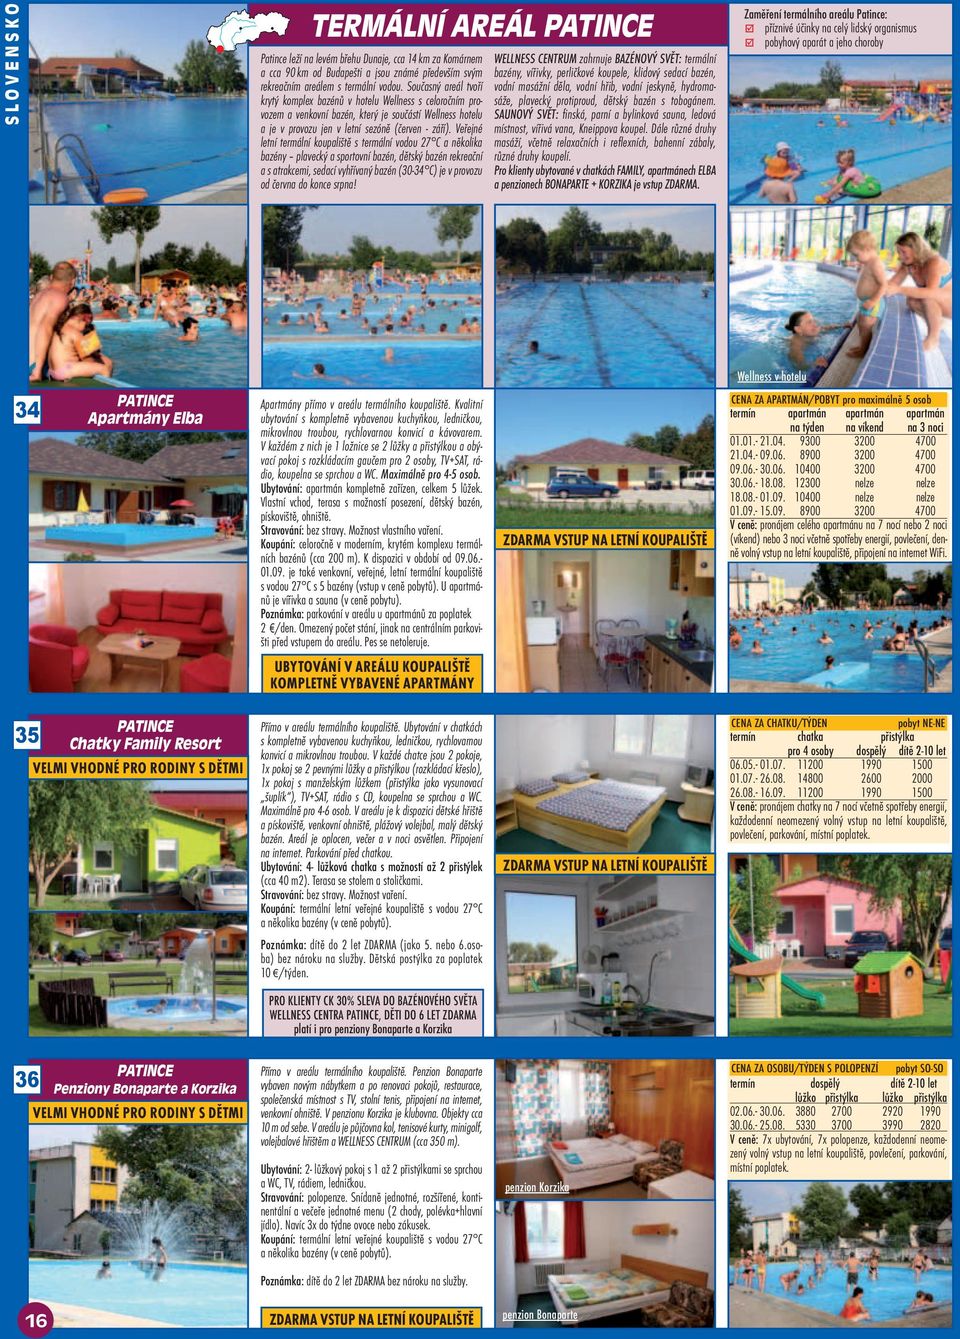 Veřejné letní termální koupaliště s termální vodou 27 C a několika bazény plavecký a sportovní bazén, dětský bazén rekreační a s atrakcemi, sedací vyhřívaný bazén (30-34 C) je v provozu od června do